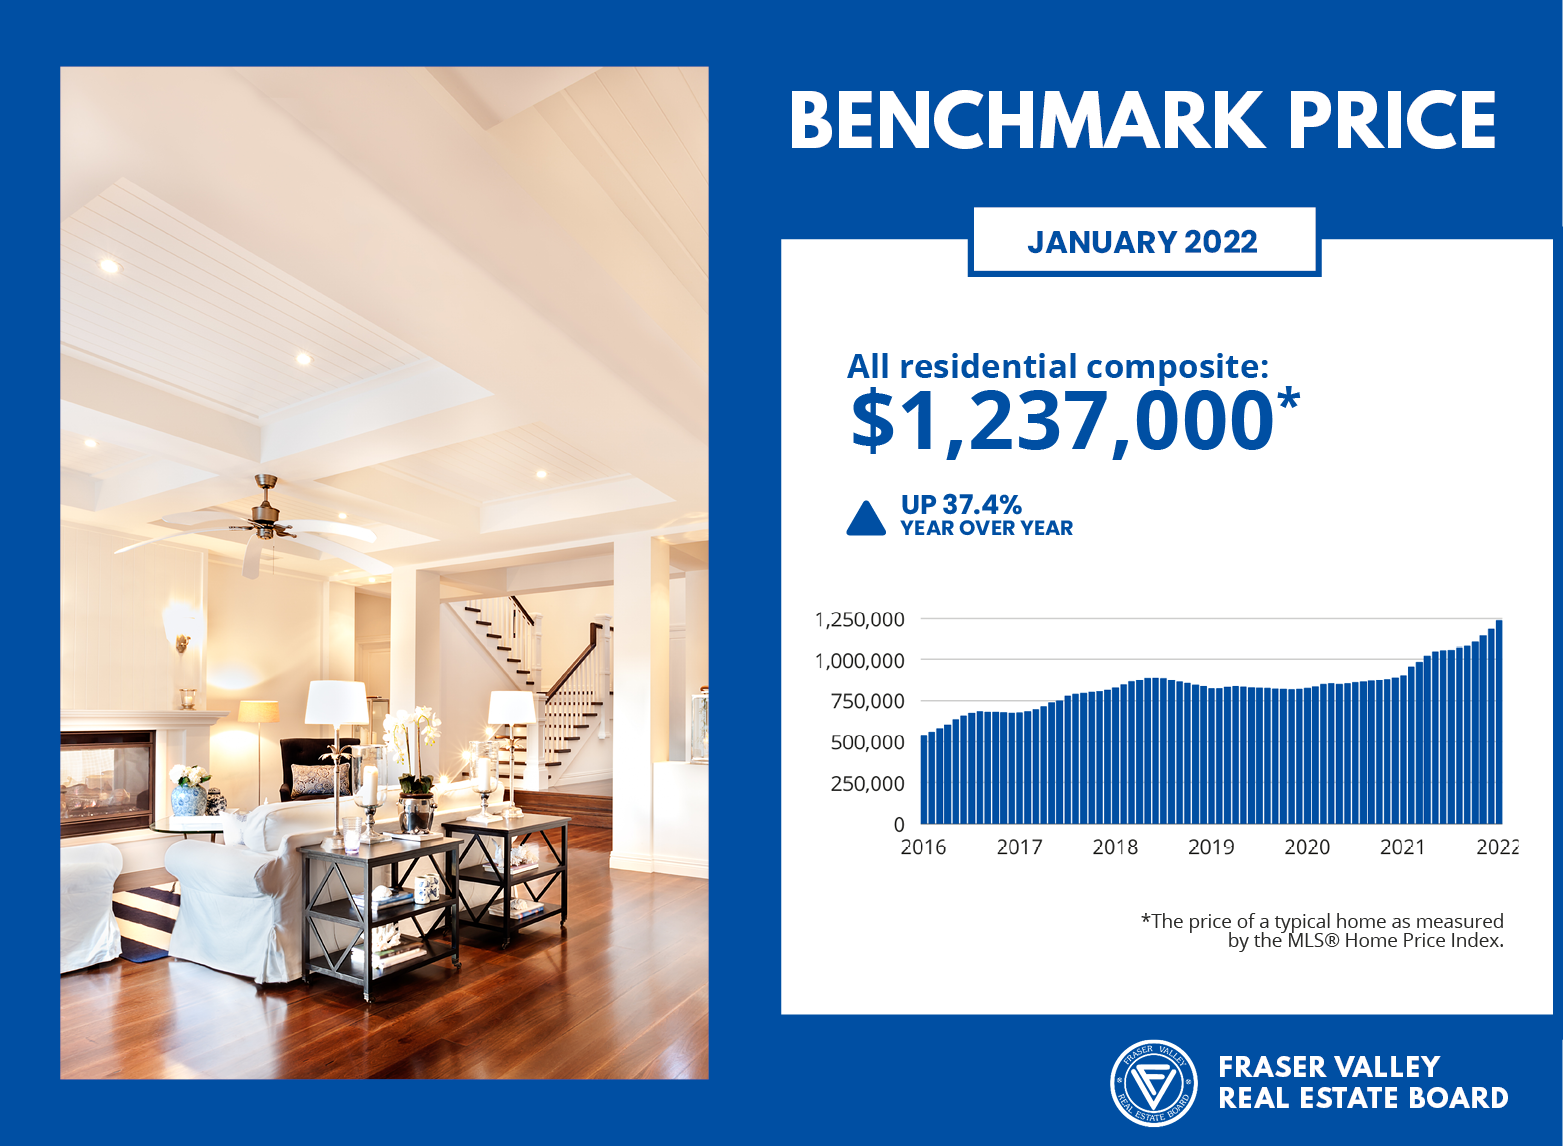 Benchmark Price for January 2022 - Fraser Valley Housing Market